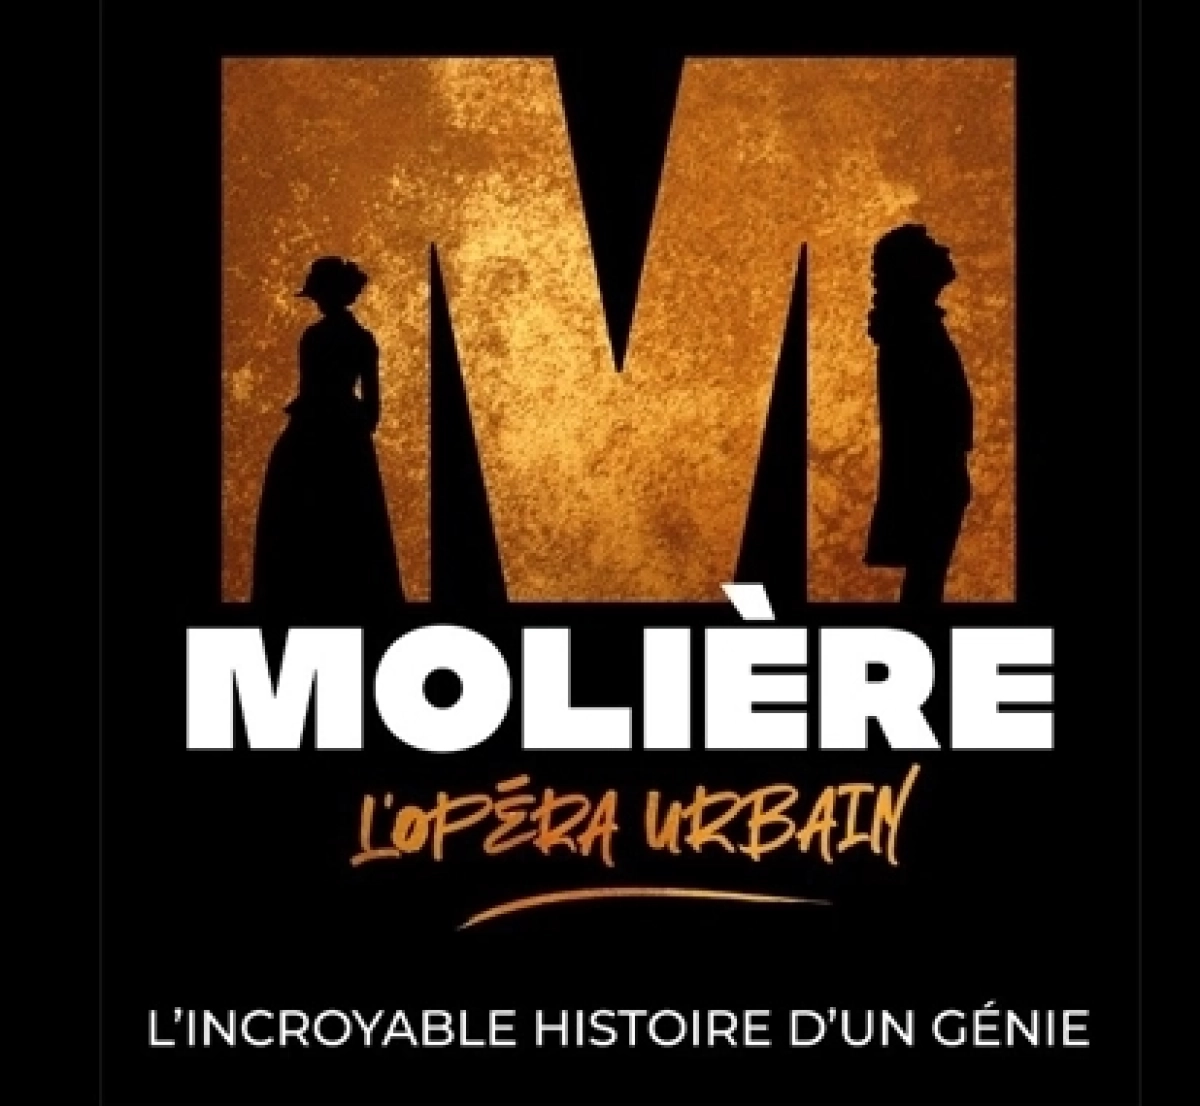 Moliere L'opera Urbain at Arena Futuroscope Tickets